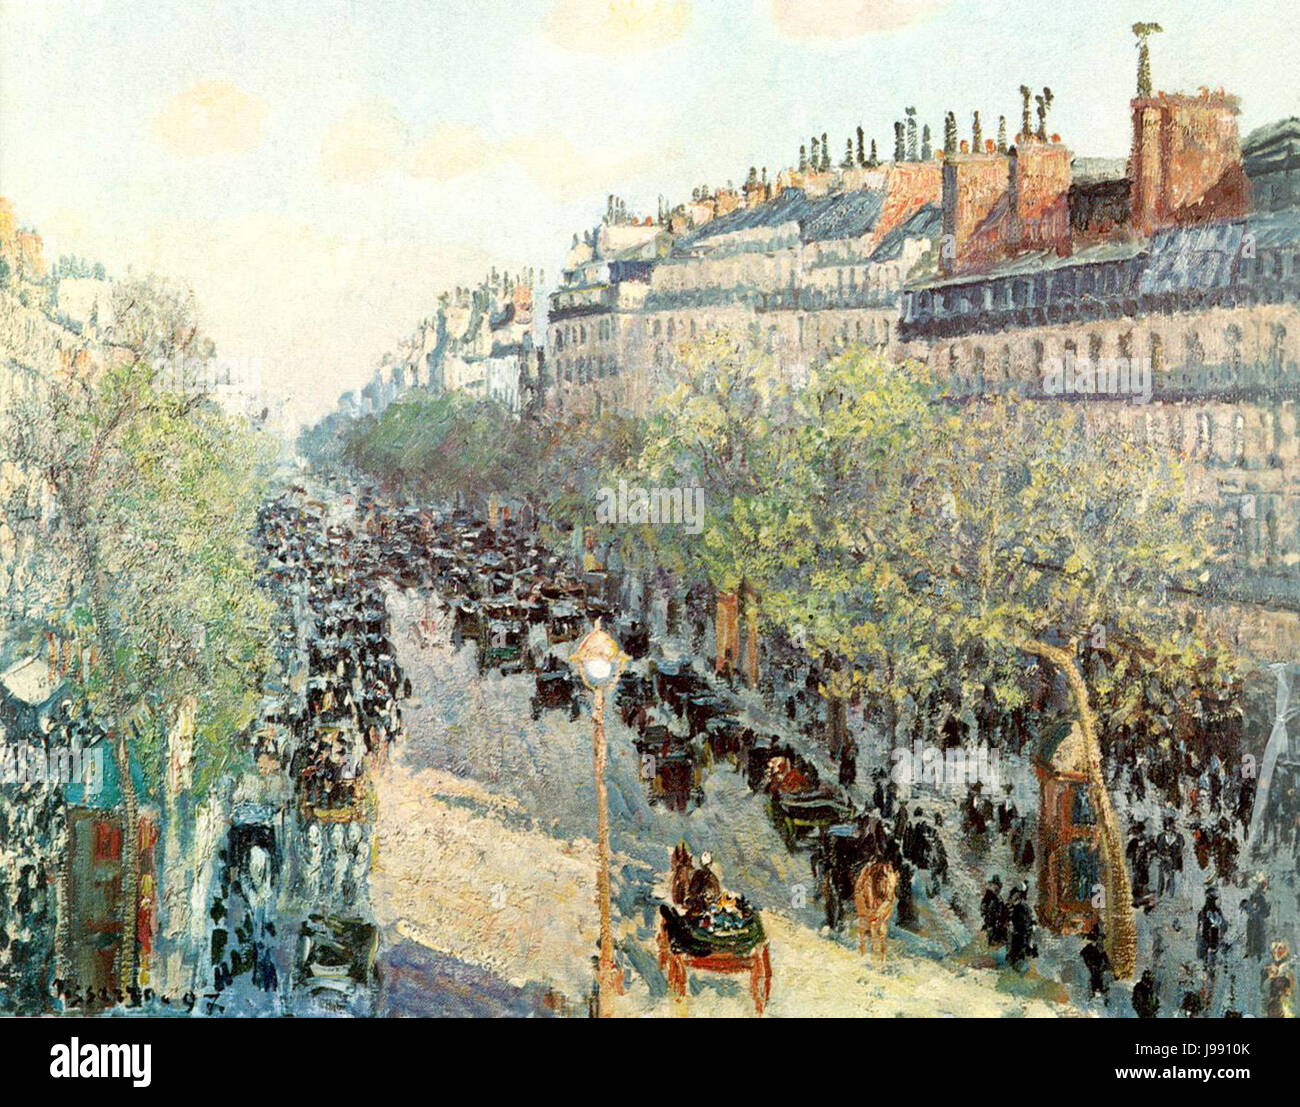 Pissarro Camille, De Boulevard Montmartre bij avond Stock Photo